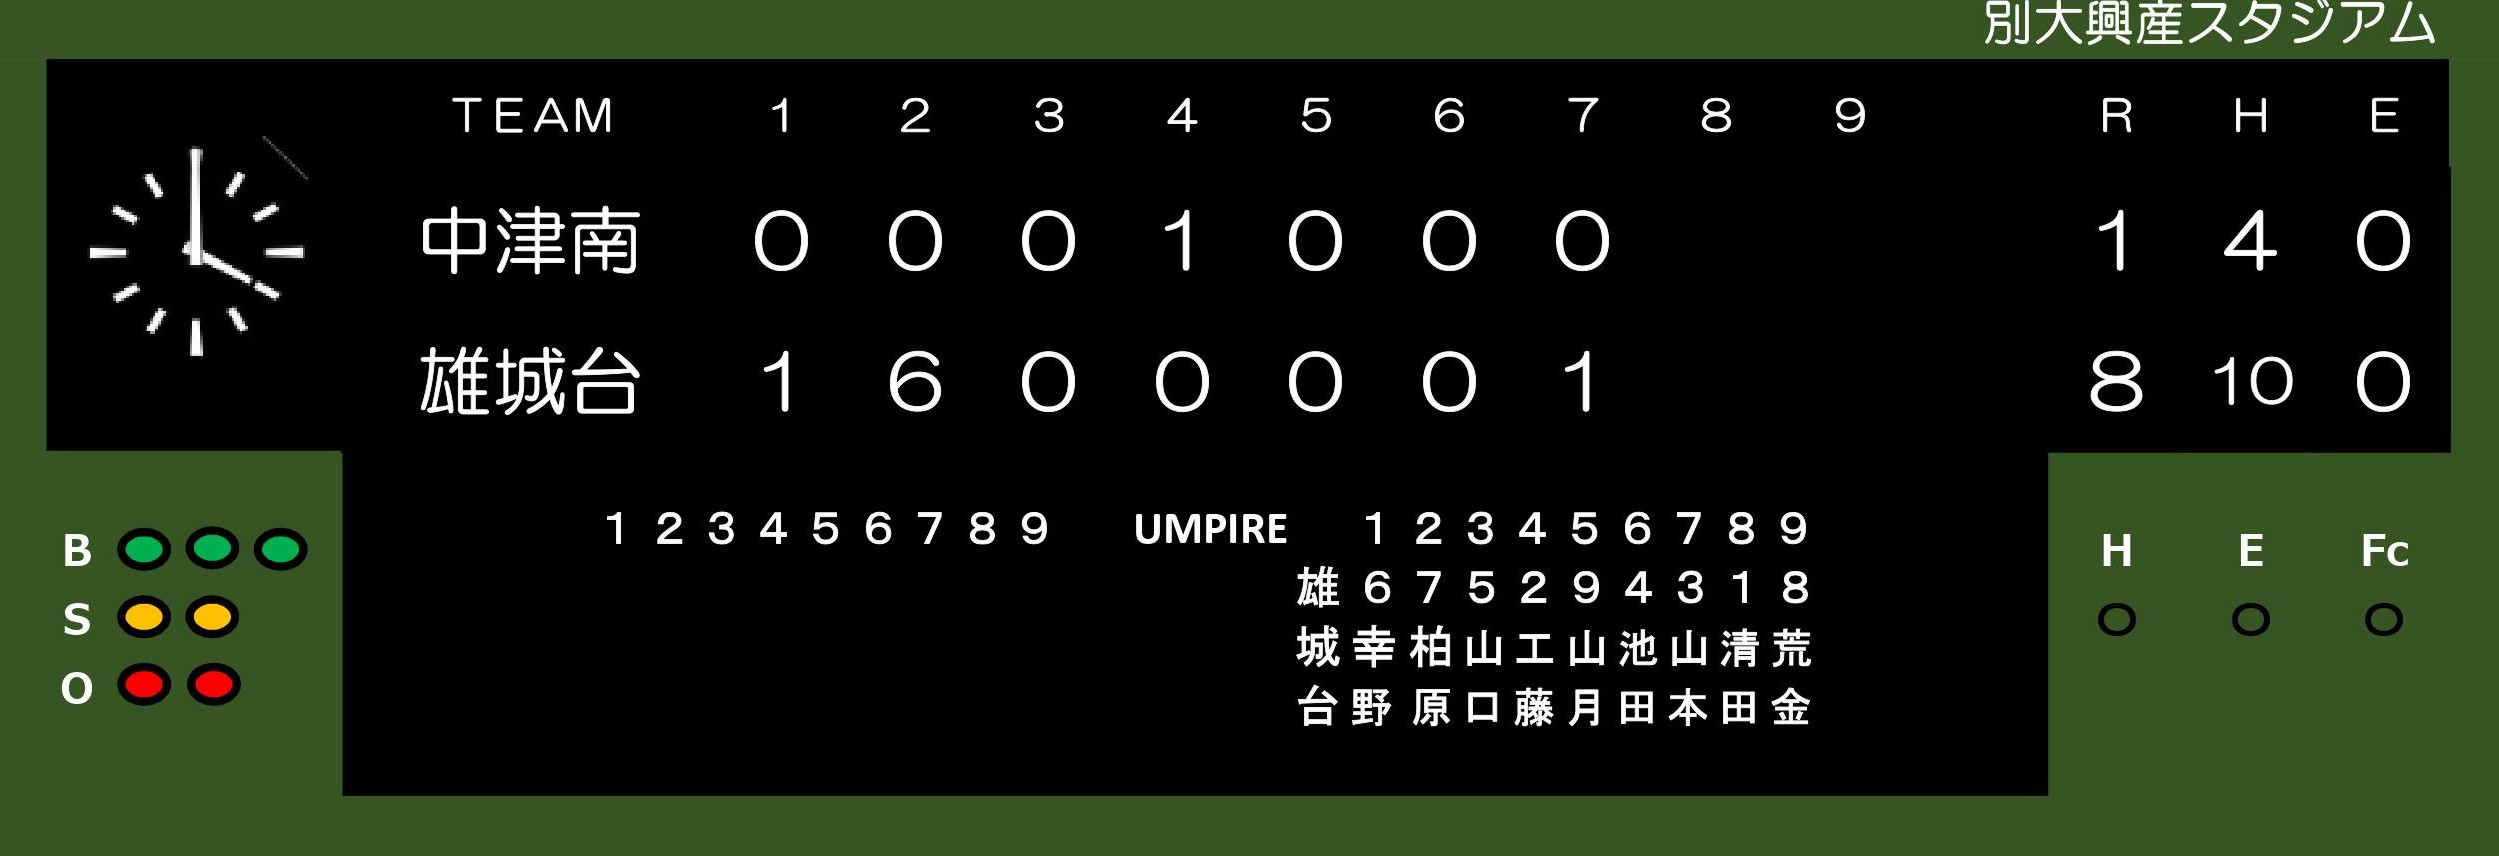 第１４８回九州高校野球県予選 1回戦に勝利しました。